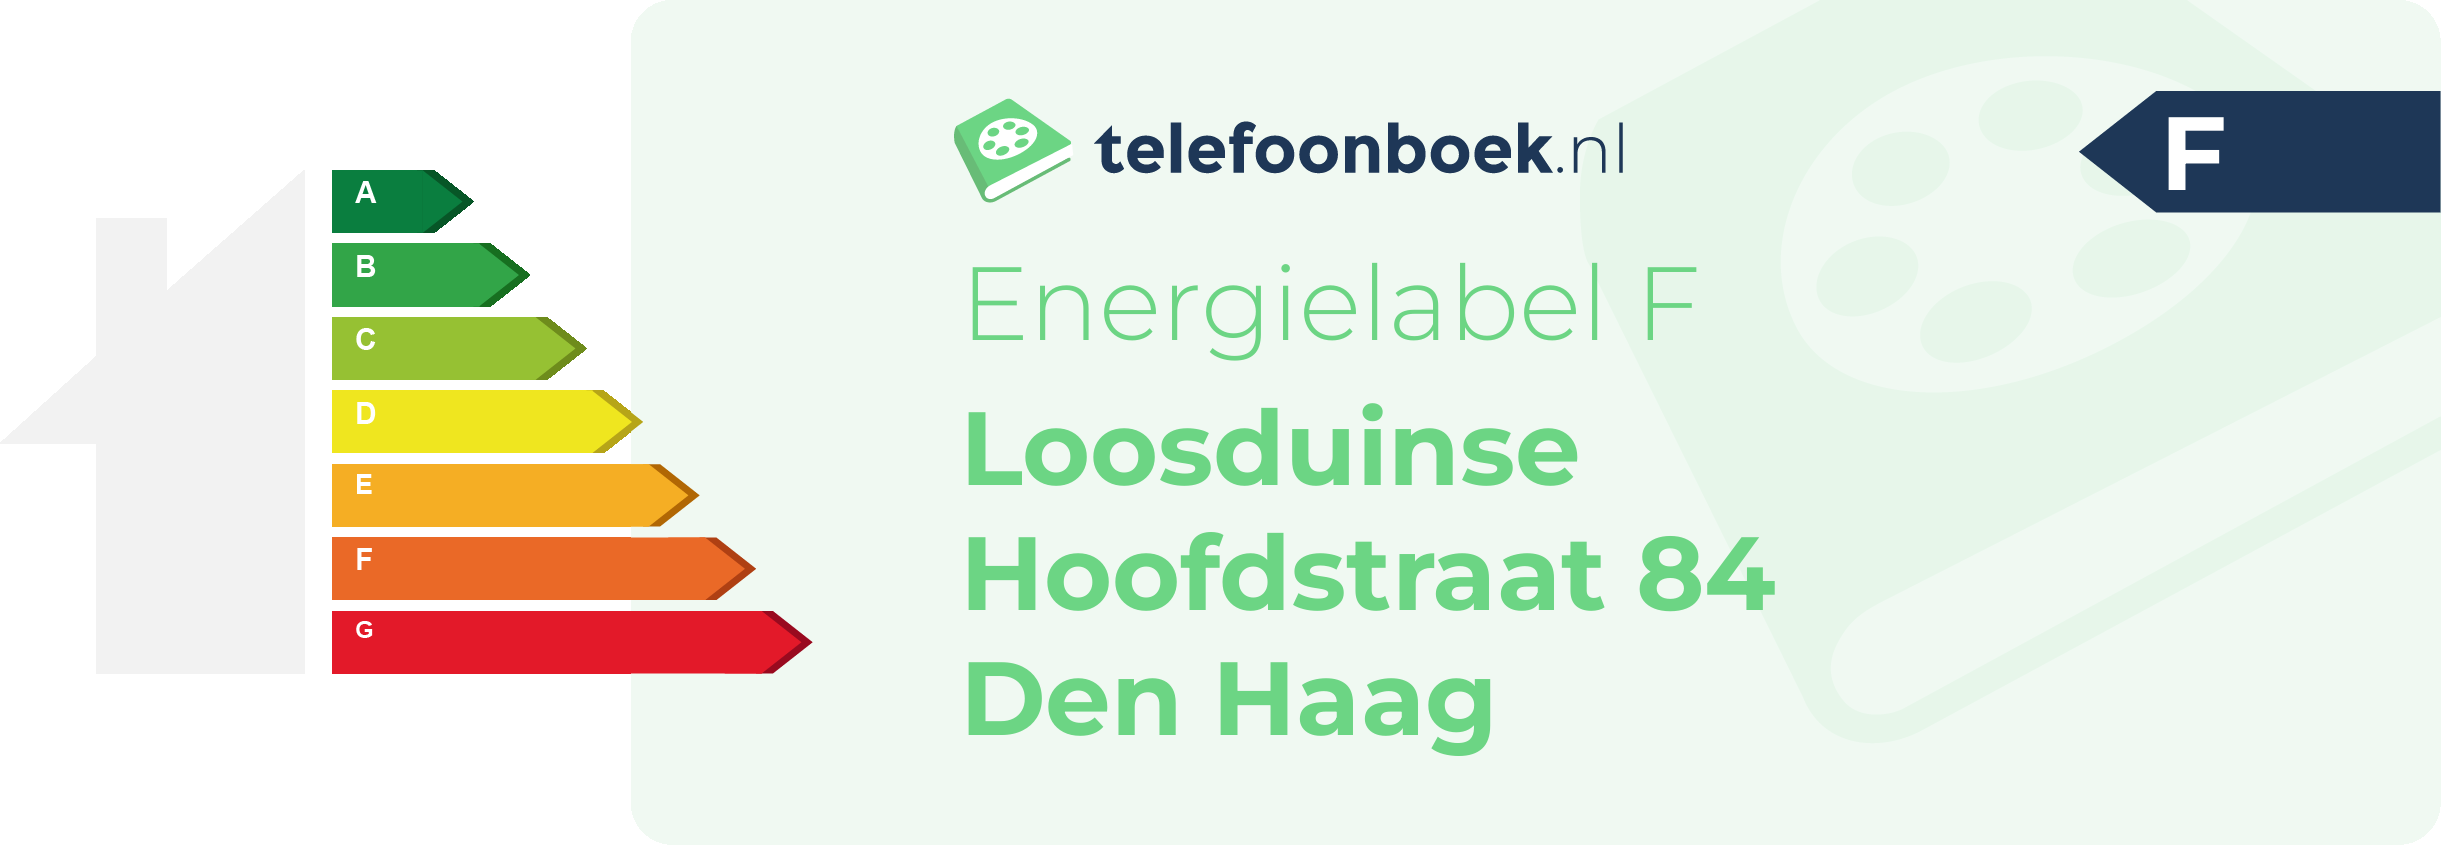 Energielabel Loosduinse Hoofdstraat 84 Den Haag